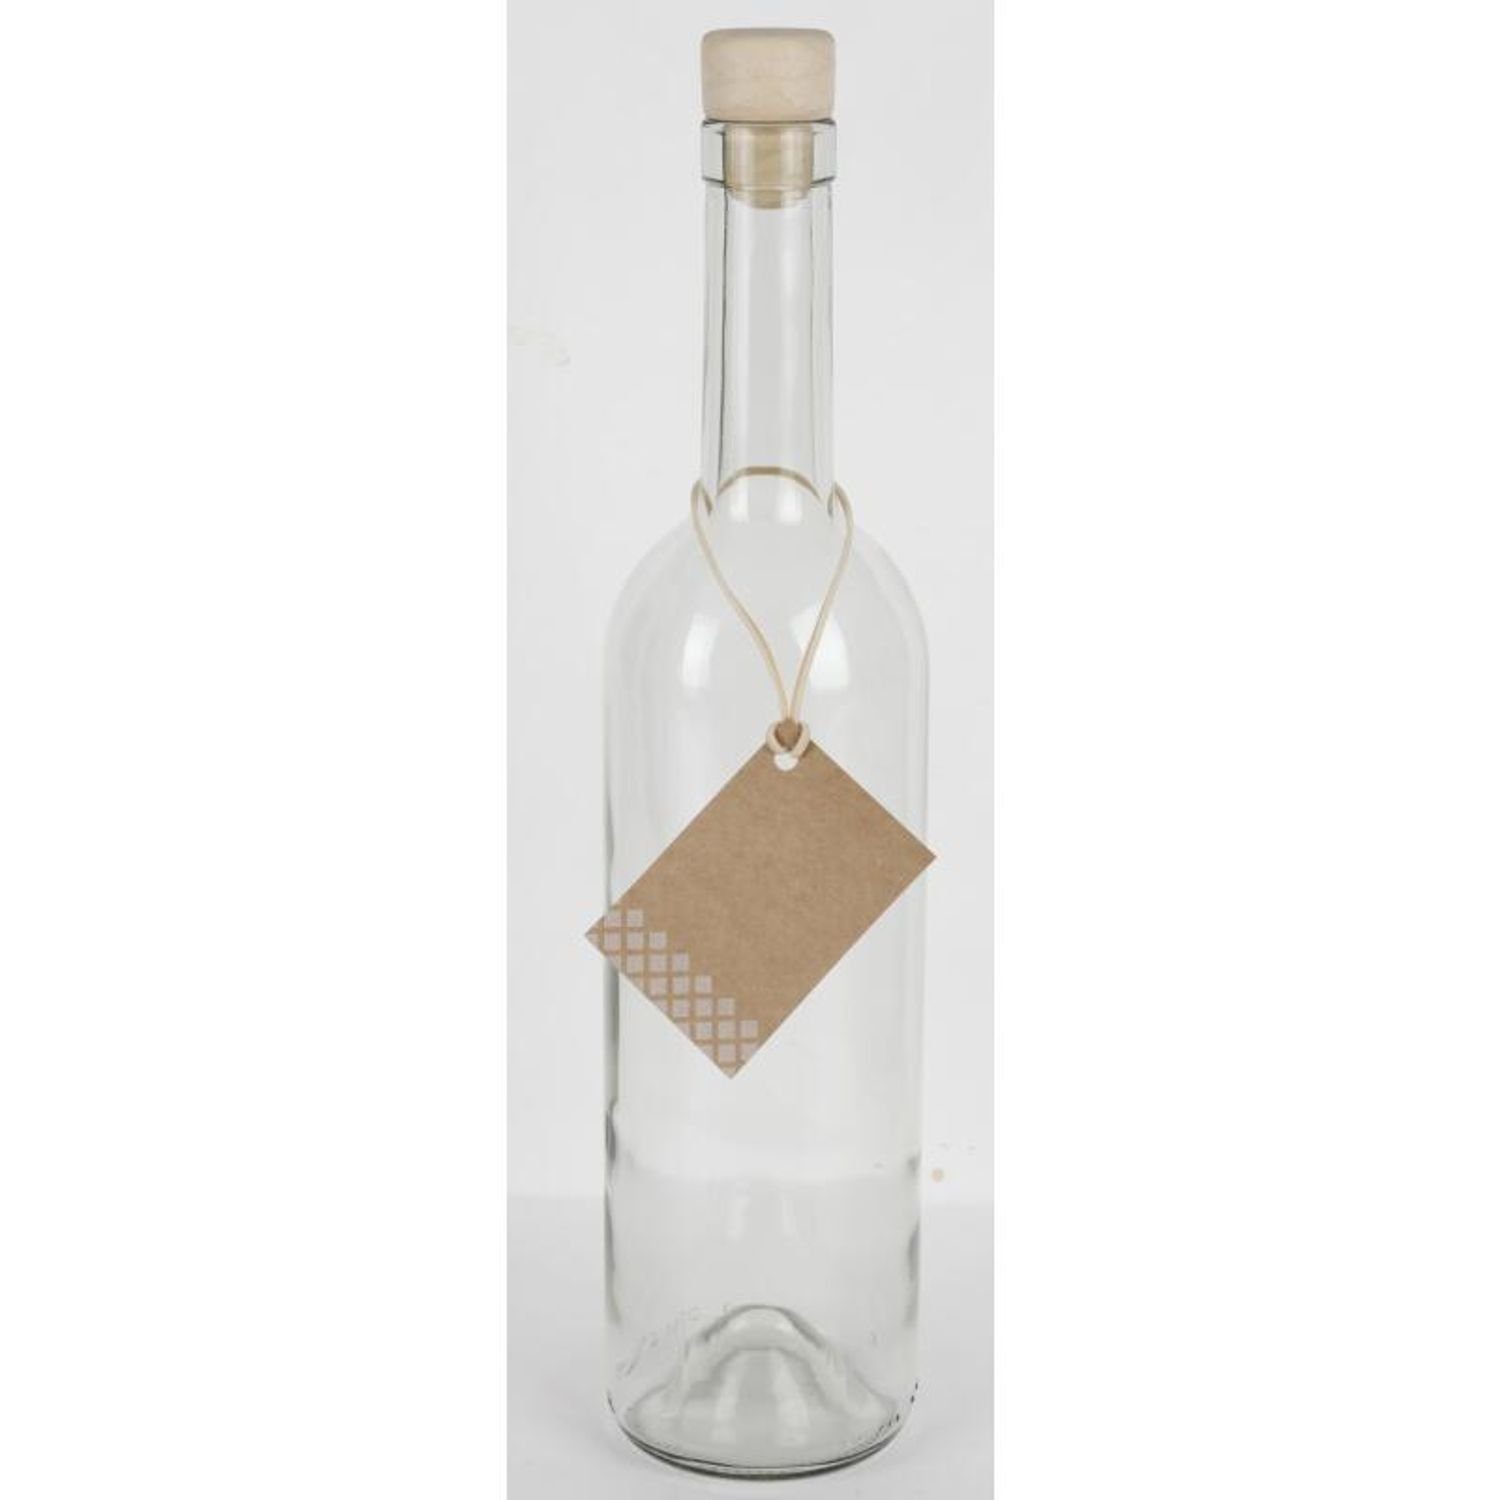 Omega Spolka Glasflasche Wasser Jawna Küc Etikett Korkenverschluss Trinken Trinkflasche Saft 0,75L 15x